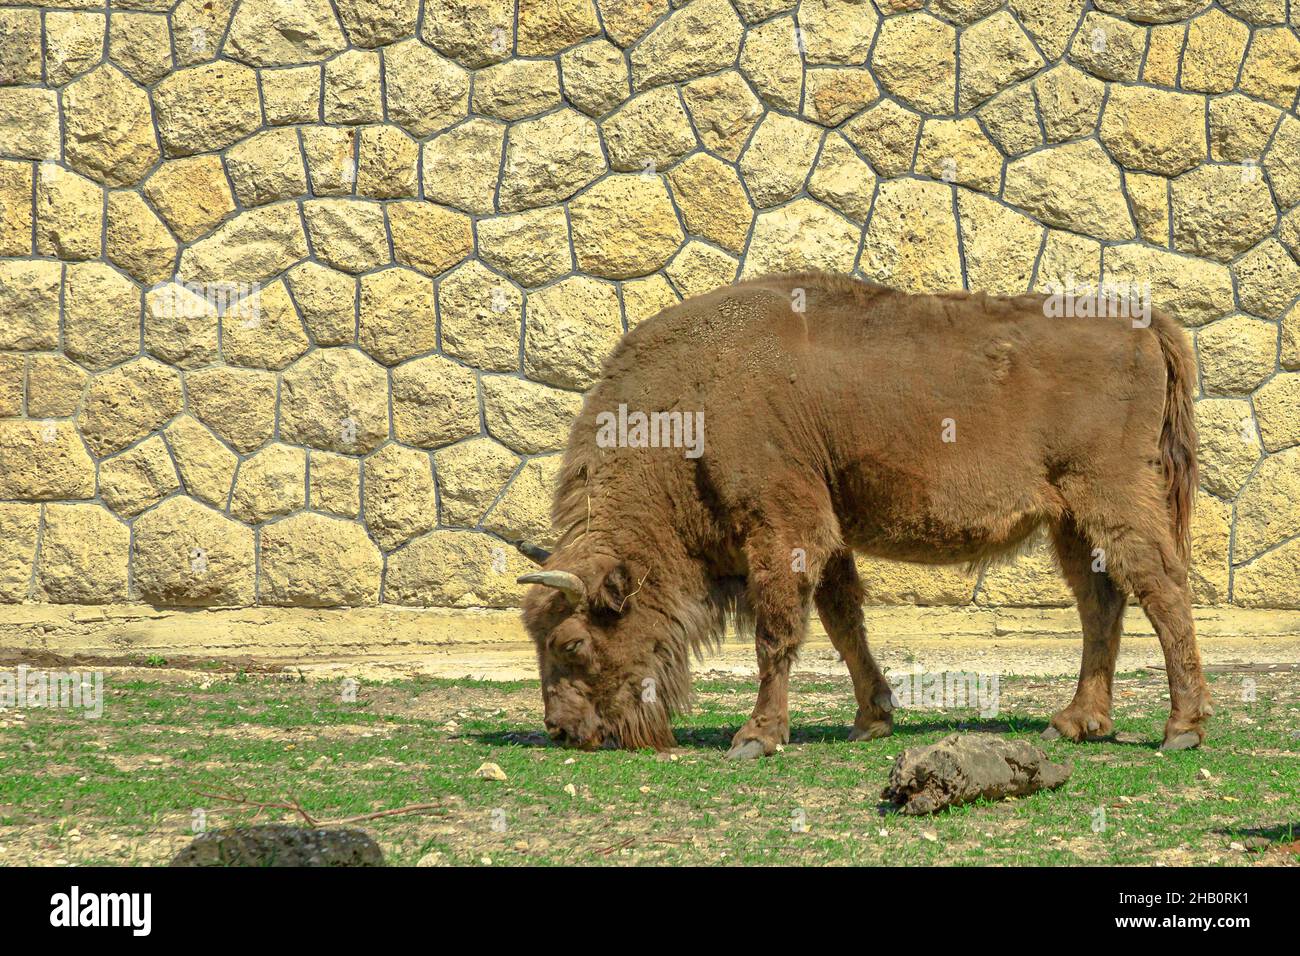 Bufalo europeo adulto d'Europa o wisent pascolo in erba. Famiglia di bisonti bonasus. Anche conosciuto come bisonte europeo del legno. Foto Stock